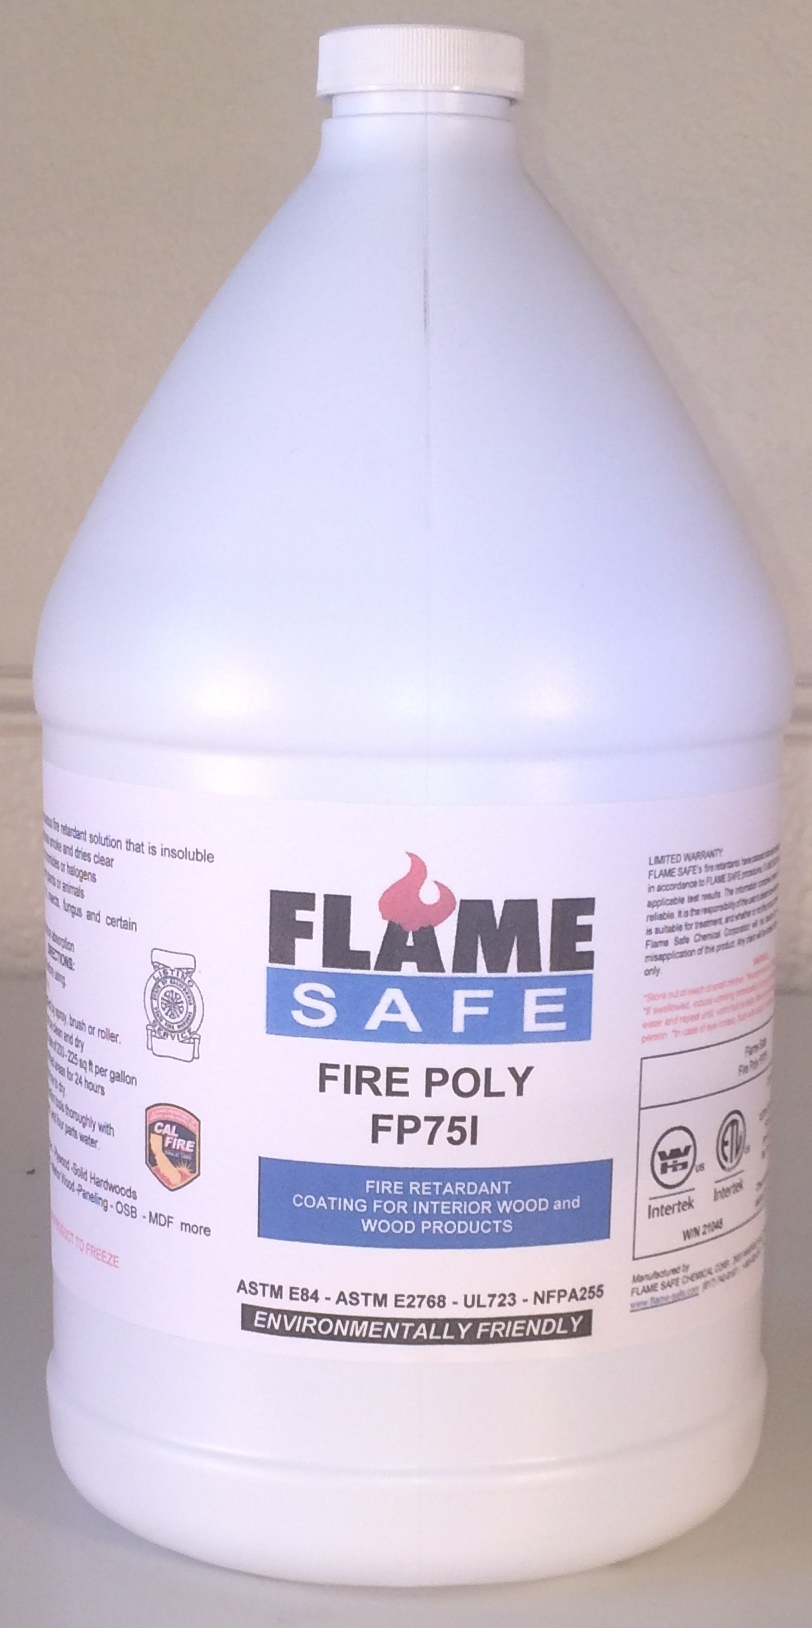 Fire retardant Fire Poly FP75i